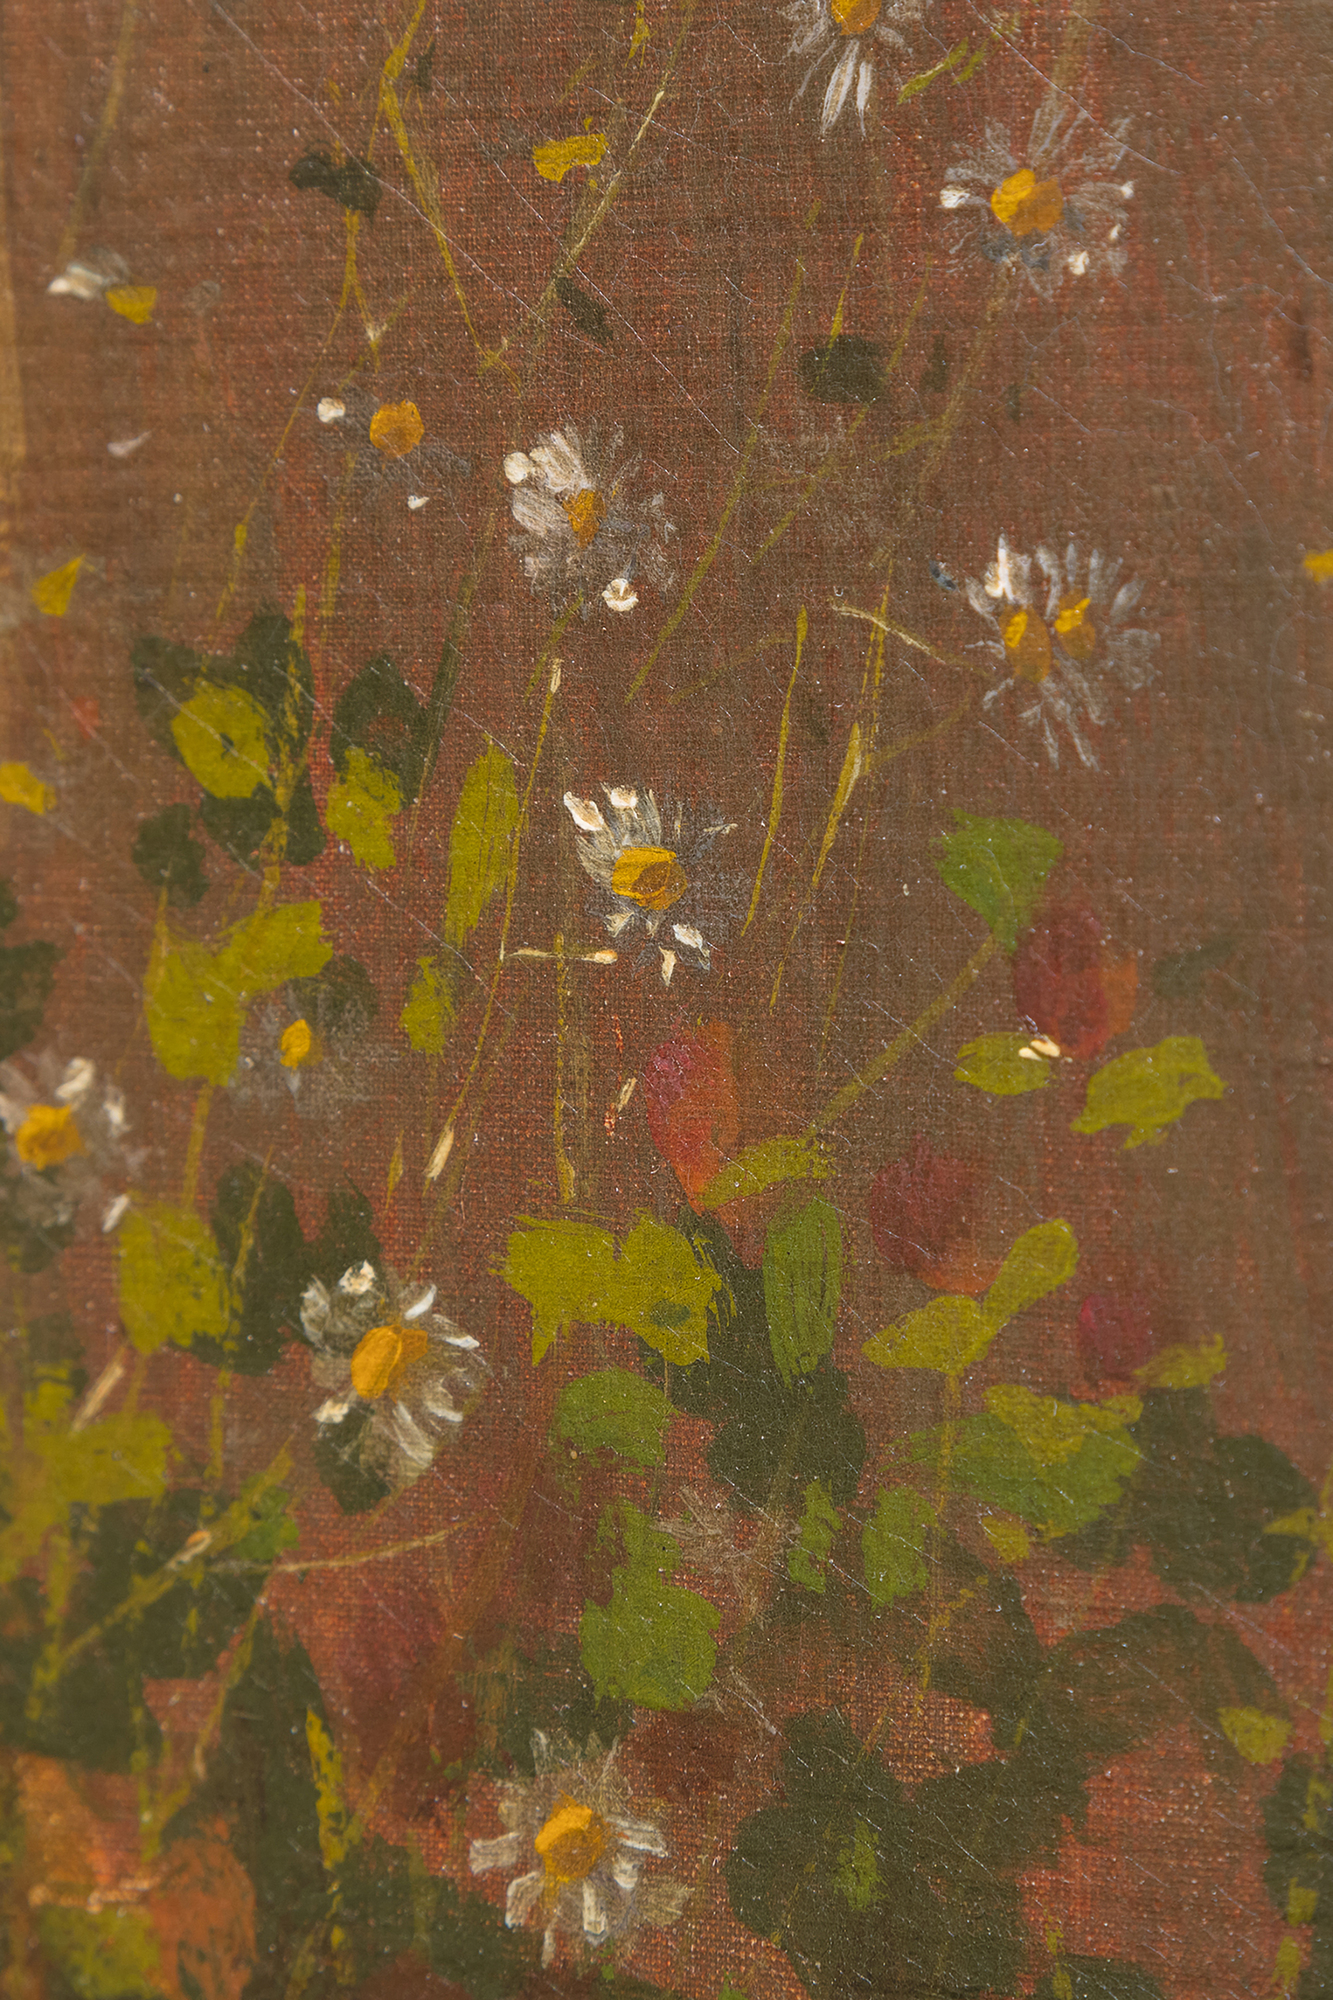 Au début des années 1870, Winslow Homer a souvent peint des scènes de la vie à la campagne près d'un petit hameau agricole réputé depuis des générations pour ses remarquables champs de blé, situé entre la rivière Hudson et les Catskills, dans l'État de New York. Aujourd'hui, Hurley est bien plus célèbre pour avoir inspiré l'une des plus grandes œuvres d'Homer, Snap the Whip, peinte au cours de l'été 1872. Parmi les nombreuses autres peintures inspirées par la région, Girl Standing in the Wheatfield est riche en sentiments, mais sans sentimentalisme excessif. Elle est directement liée à une étude peinte en France en 1866 et intitulée In the Wheatfields (Dans les champs de blé), ainsi qu'à une autre étude peinte l'année suivante, après son retour en Amérique. Mais Homère aurait sans doute été le plus fier de celle-ci. Il s'agit d'un portrait, d'une étude de costume, d'une peinture de genre dans la grande tradition de la peinture pastorale européenne, et d'un tour de force atmosphérique dramatiquement rétro-éclairé, imprégné de la lumière de l'heure qui s'estompe rapidement, avec des notes lambda et fleuries et des touches d'épis de blé. En 1874, Homer a envoyé quatre tableaux à l'exposition de la National Academy of Design. L'une d'entre elles était intitulée "Girl". Ne serait-ce pas celle-ci ?